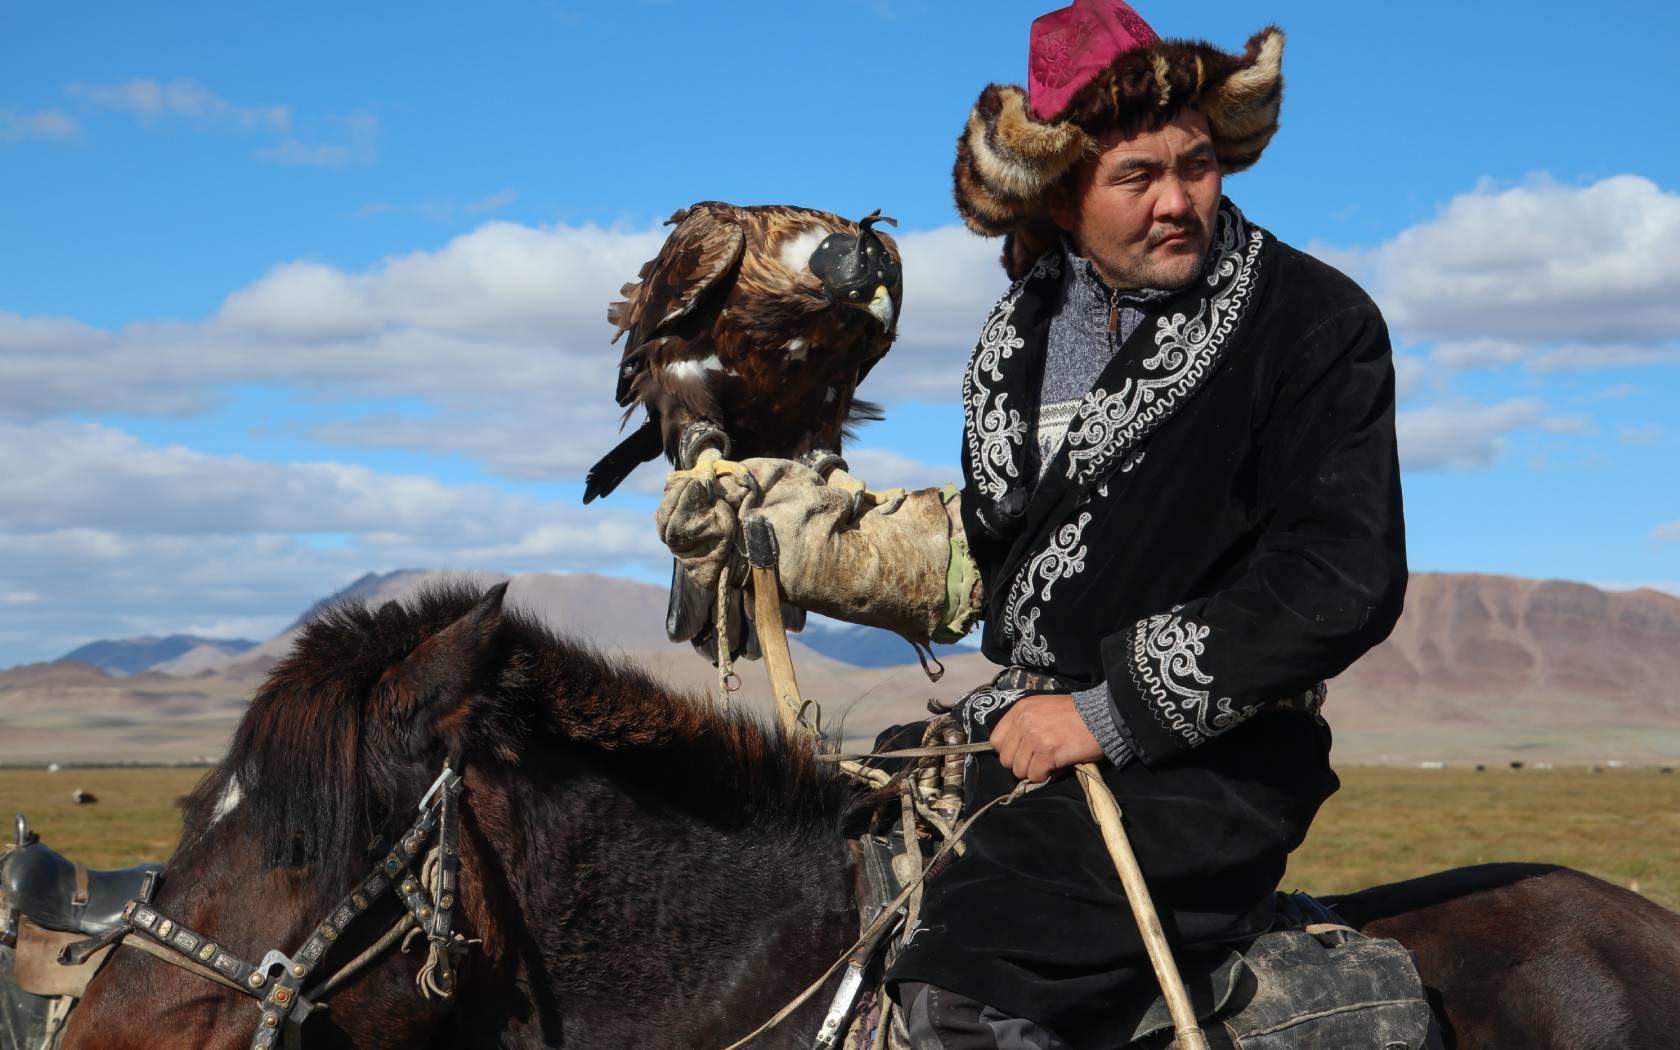 A Kazakh eagle hunter on horseback.